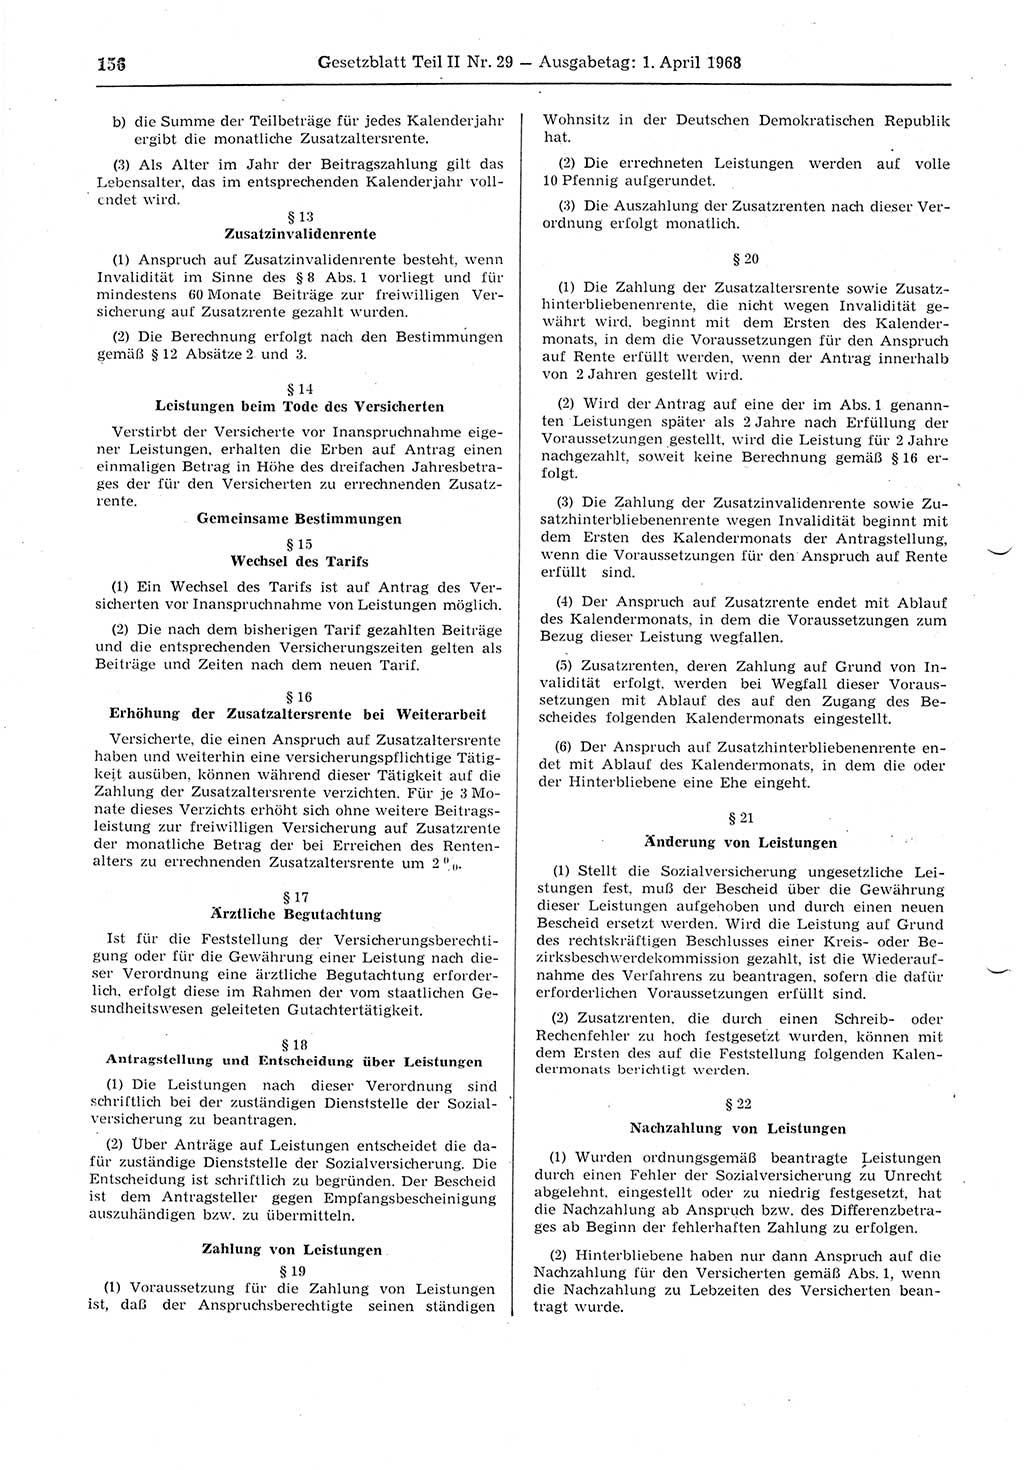 Gesetzblatt (GBl.) der Deutschen Demokratischen Republik (DDR) Teil ⅠⅠ 1968, Seite 156 (GBl. DDR ⅠⅠ 1968, S. 156)